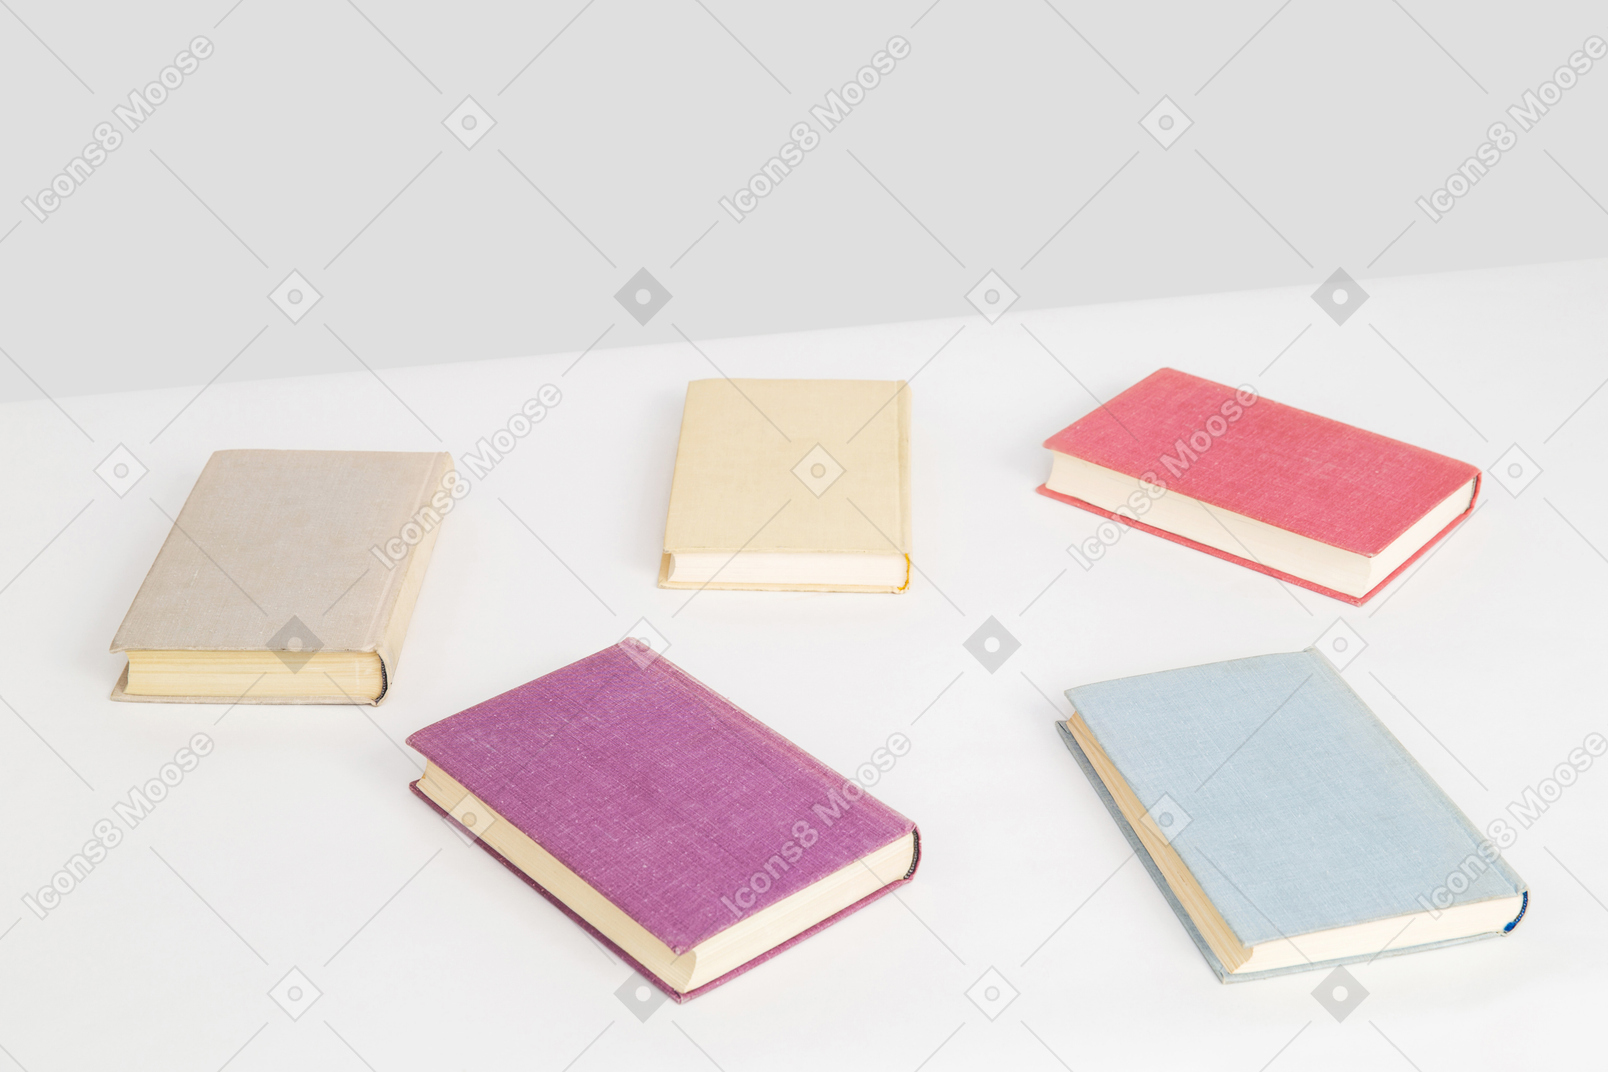 책상 위에 다섯 권의 책